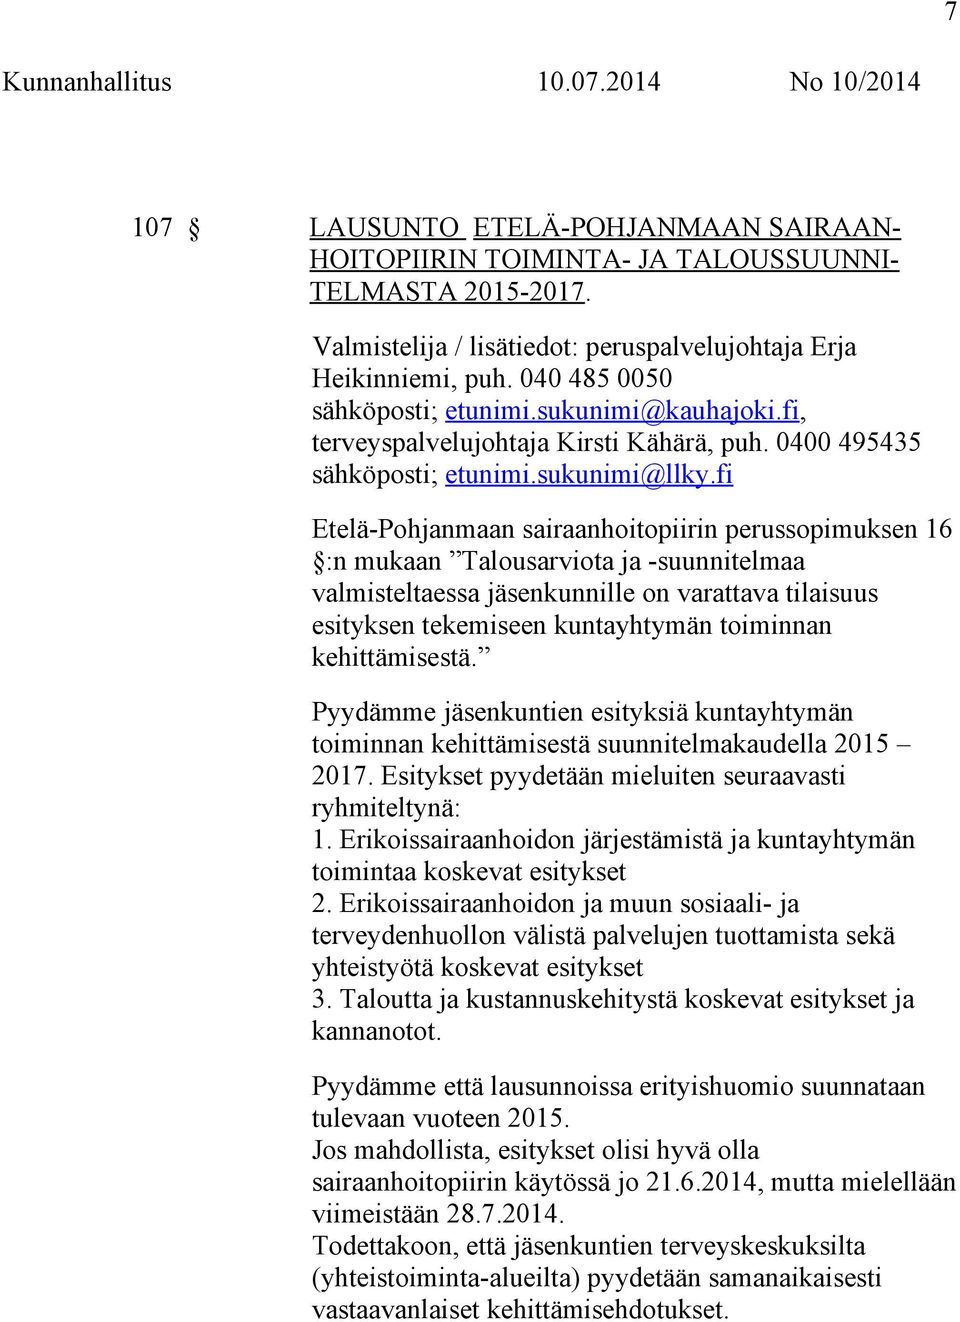 fi Etelä-Pohjanmaan sairaanhoitopiirin perussopimuksen 16 :n mukaan Talousarviota ja -suunnitelmaa valmisteltaessa jäsenkunnille on varattava tilaisuus esityksen tekemiseen kuntayhtymän toiminnan